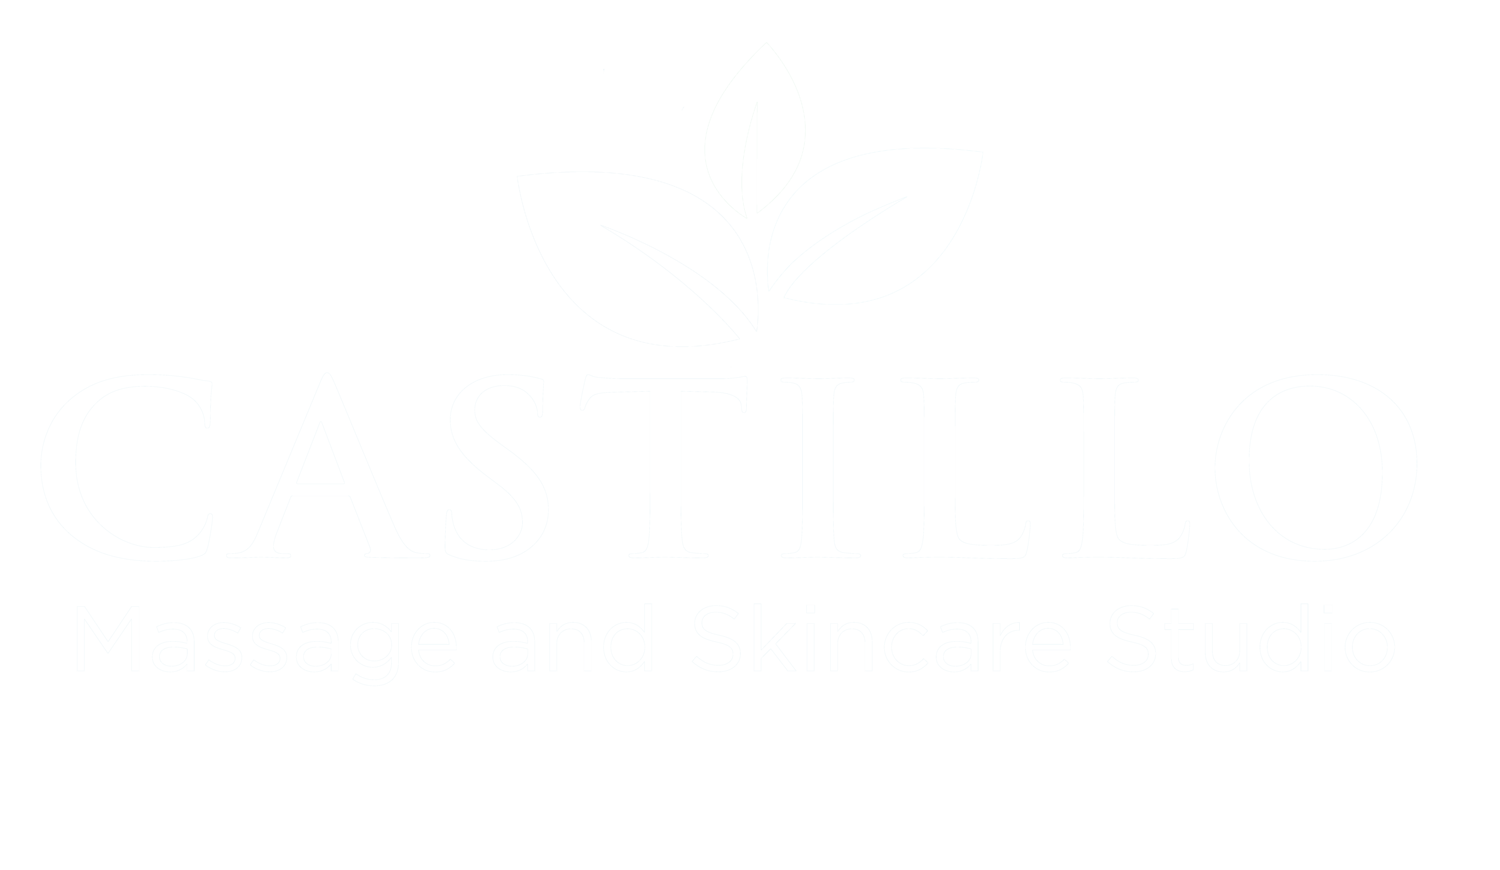 Castillo Massage and Skincare Studio